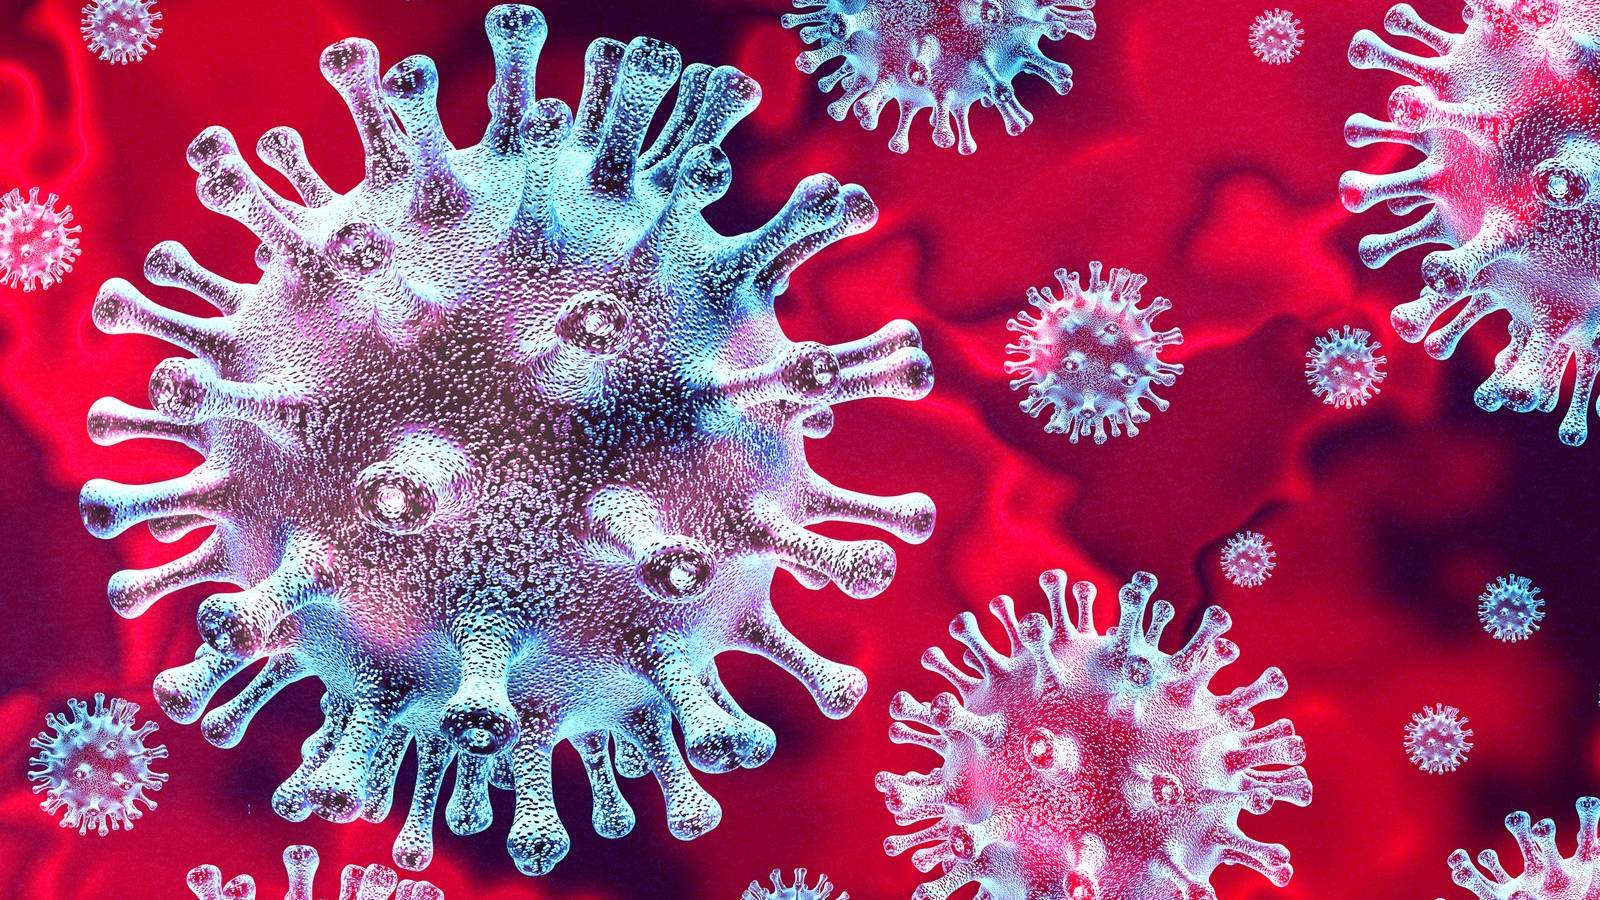 Rumänische Coronavirus-Fälle am 17. Juli geheilt